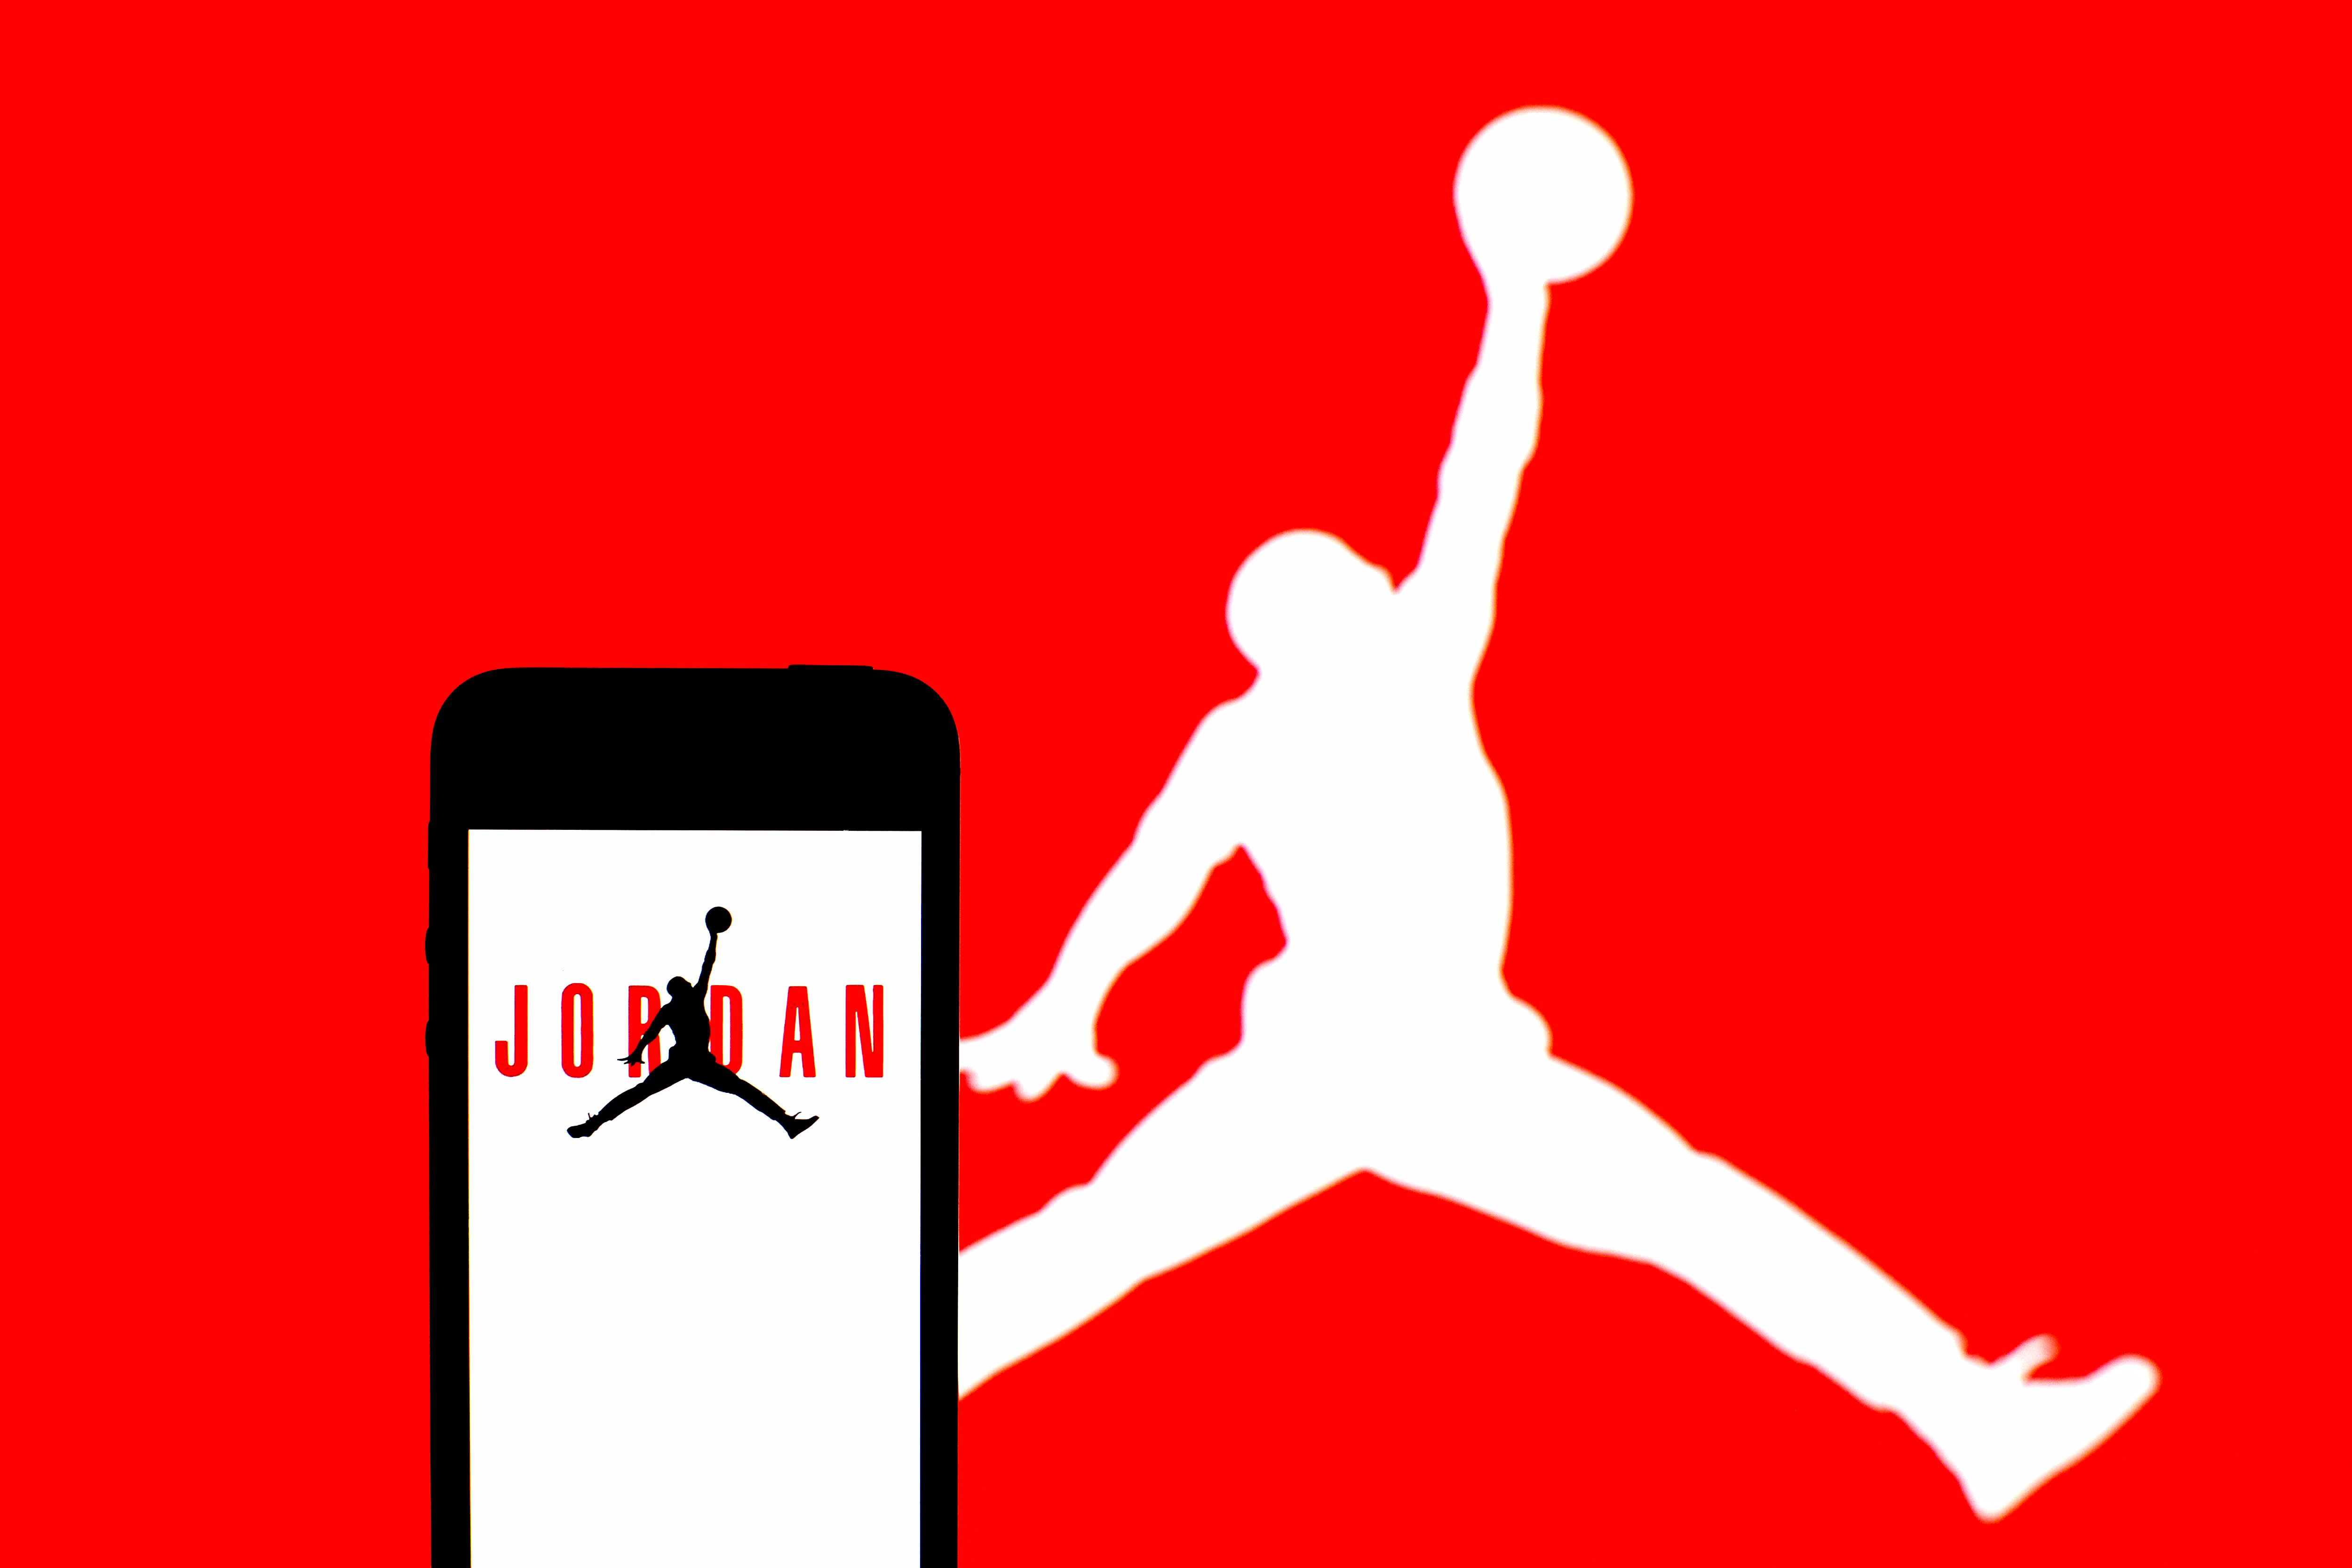 Air Jordan 1 Low “Quai 54” Surfaces Online